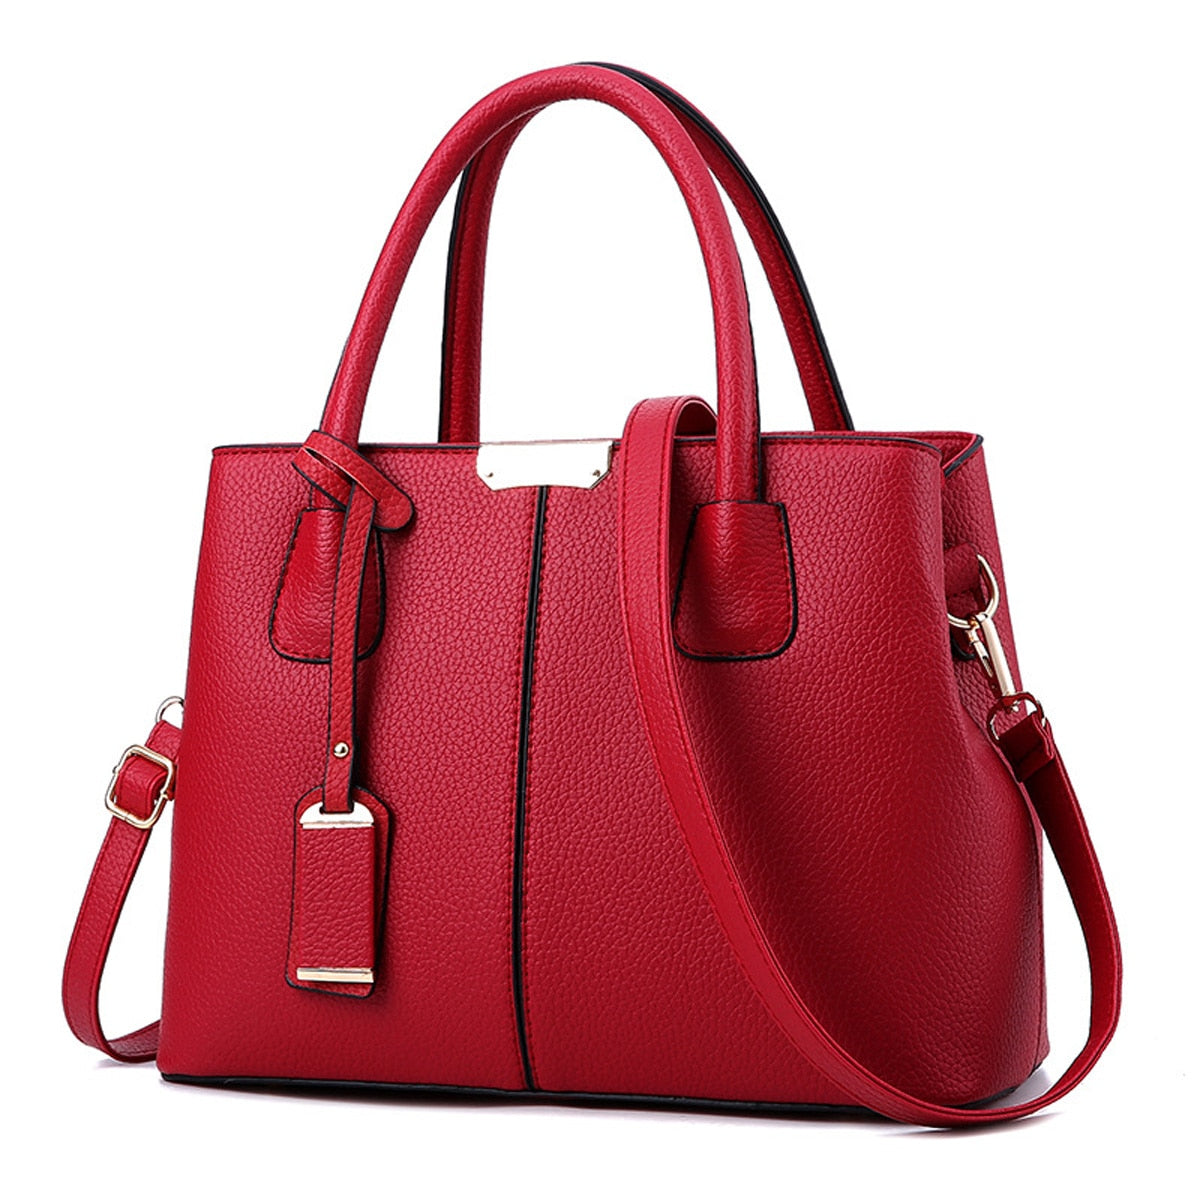 HOOR Elegant Leather Handbags Burgundy